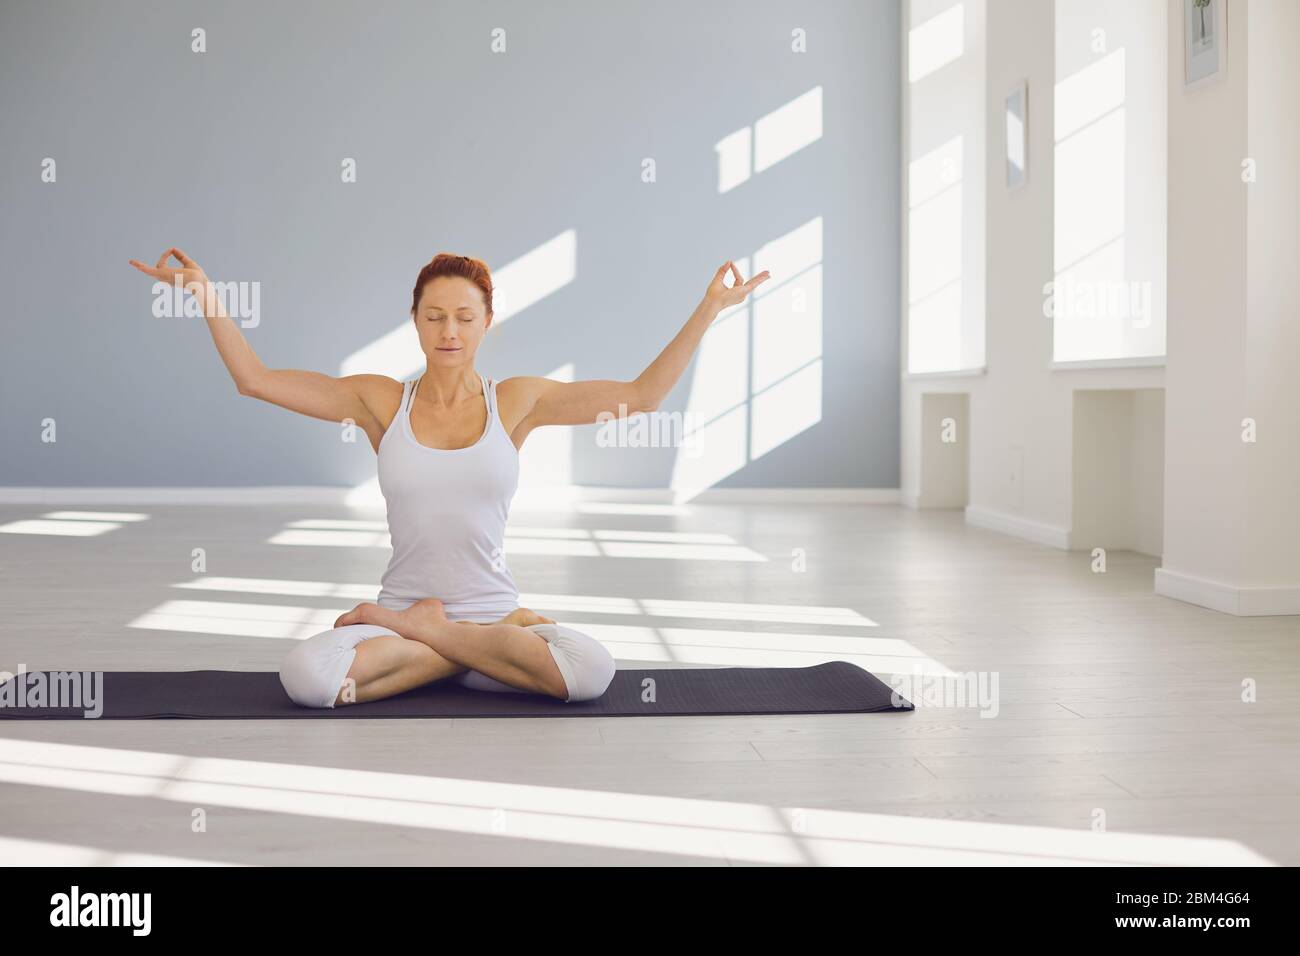 Yoga girl woman.Fitness girl pratique le yoga dans une position lotus assis sur un sol gris dans un studio lumineux blanc. Banque D'Images